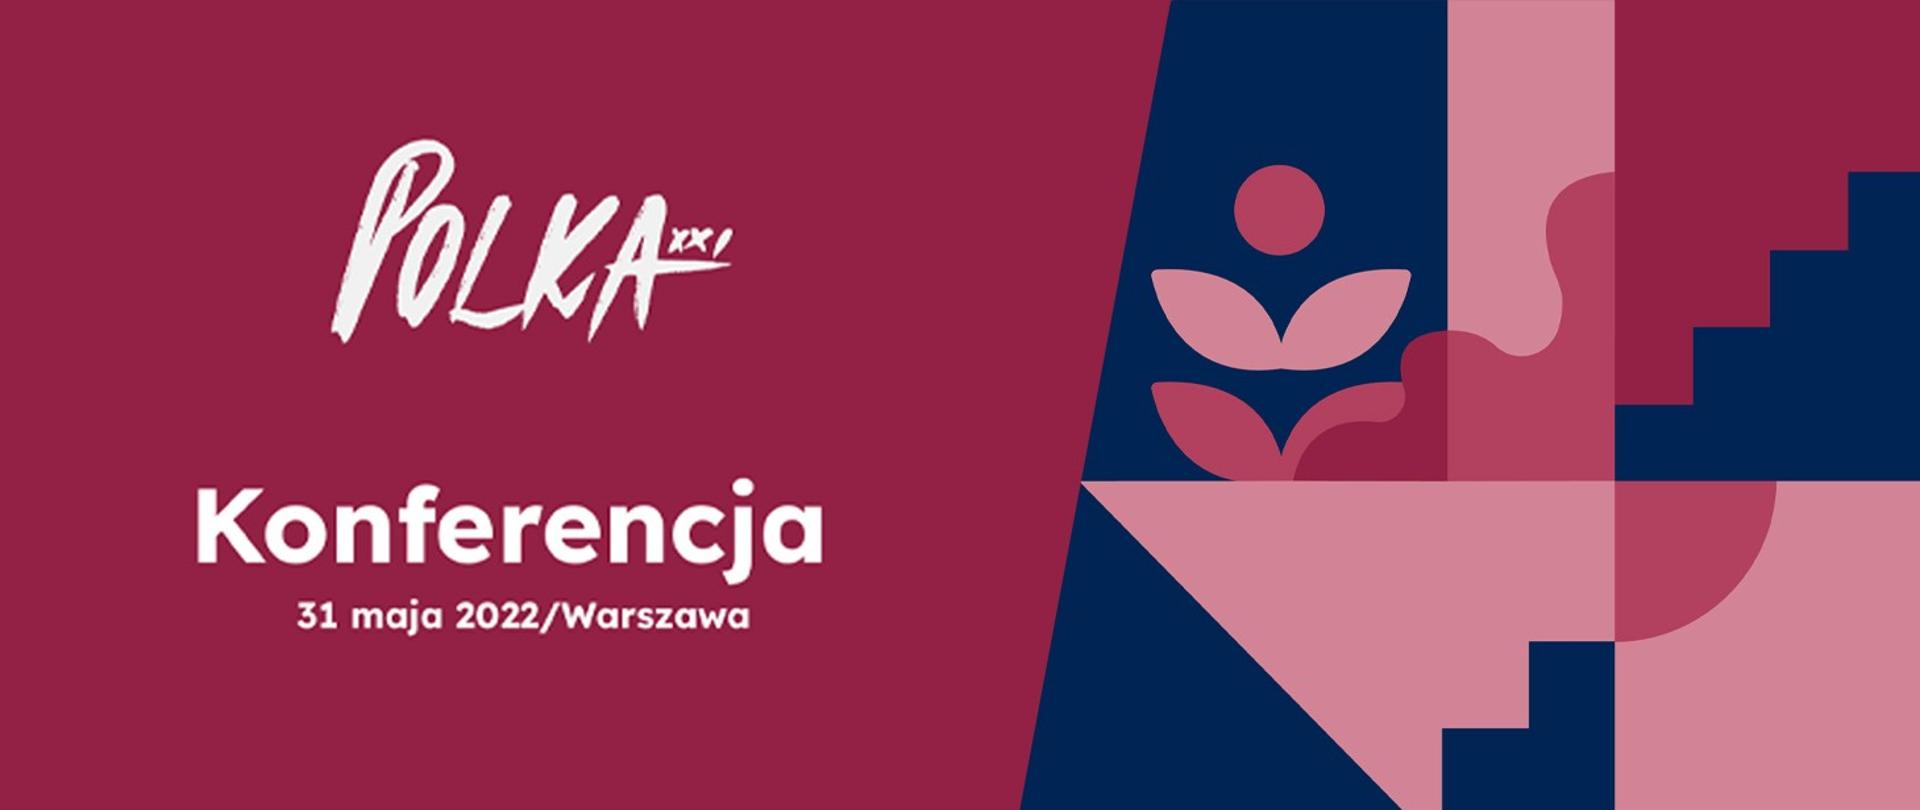 Plakat Konferencji Polka XX wieku zaplanowanej na 31 maja 2022 roku w Warszawie na bordowym tle. 